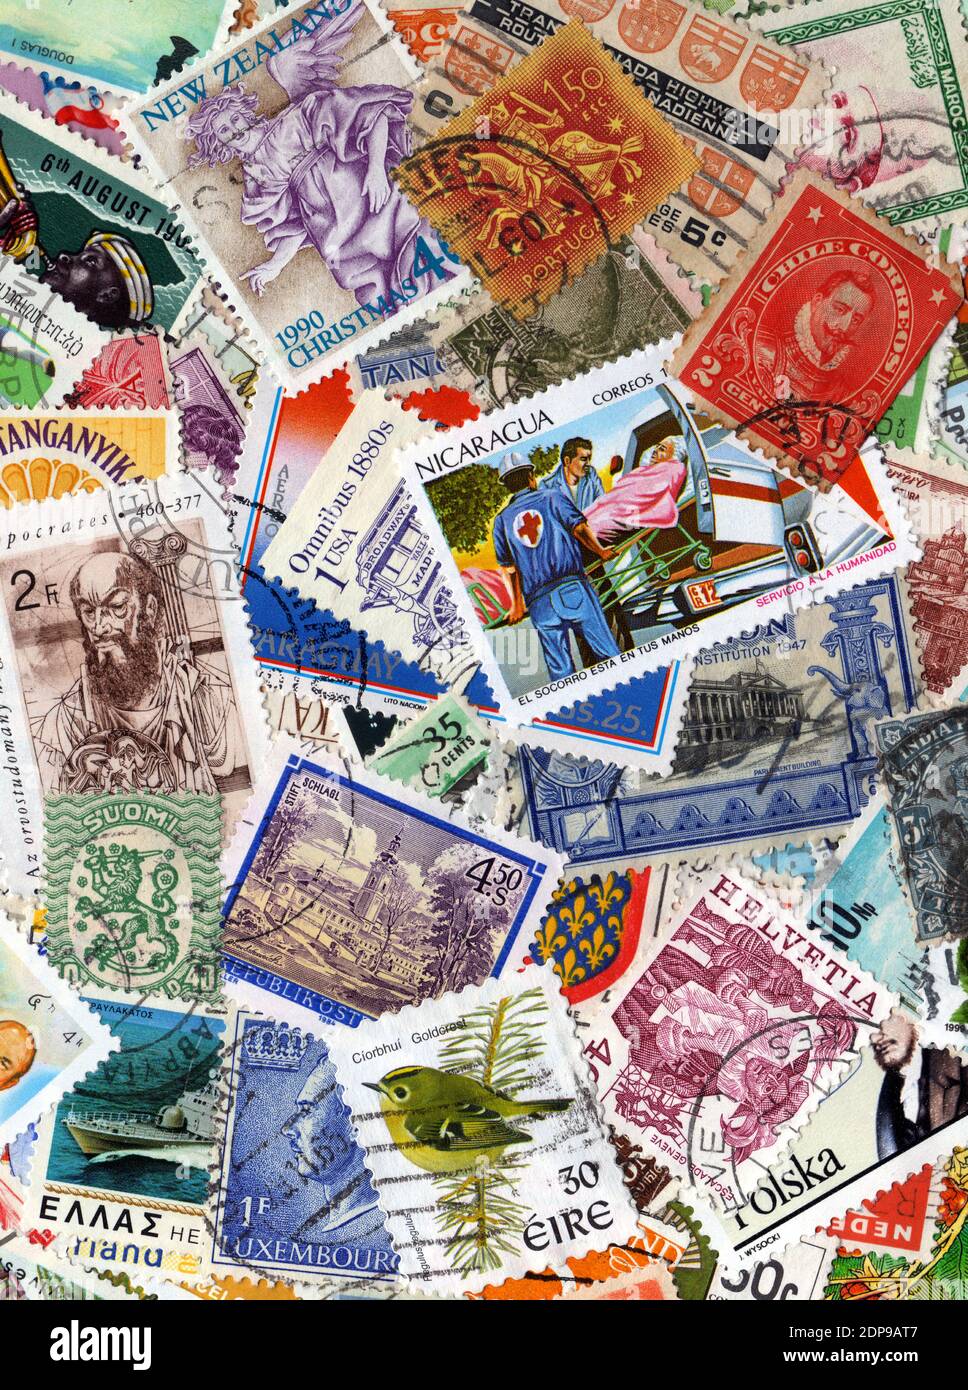 Une grande collection de timbres-poste étrangers d'arrière-plan, image de stock photo Banque D'Images